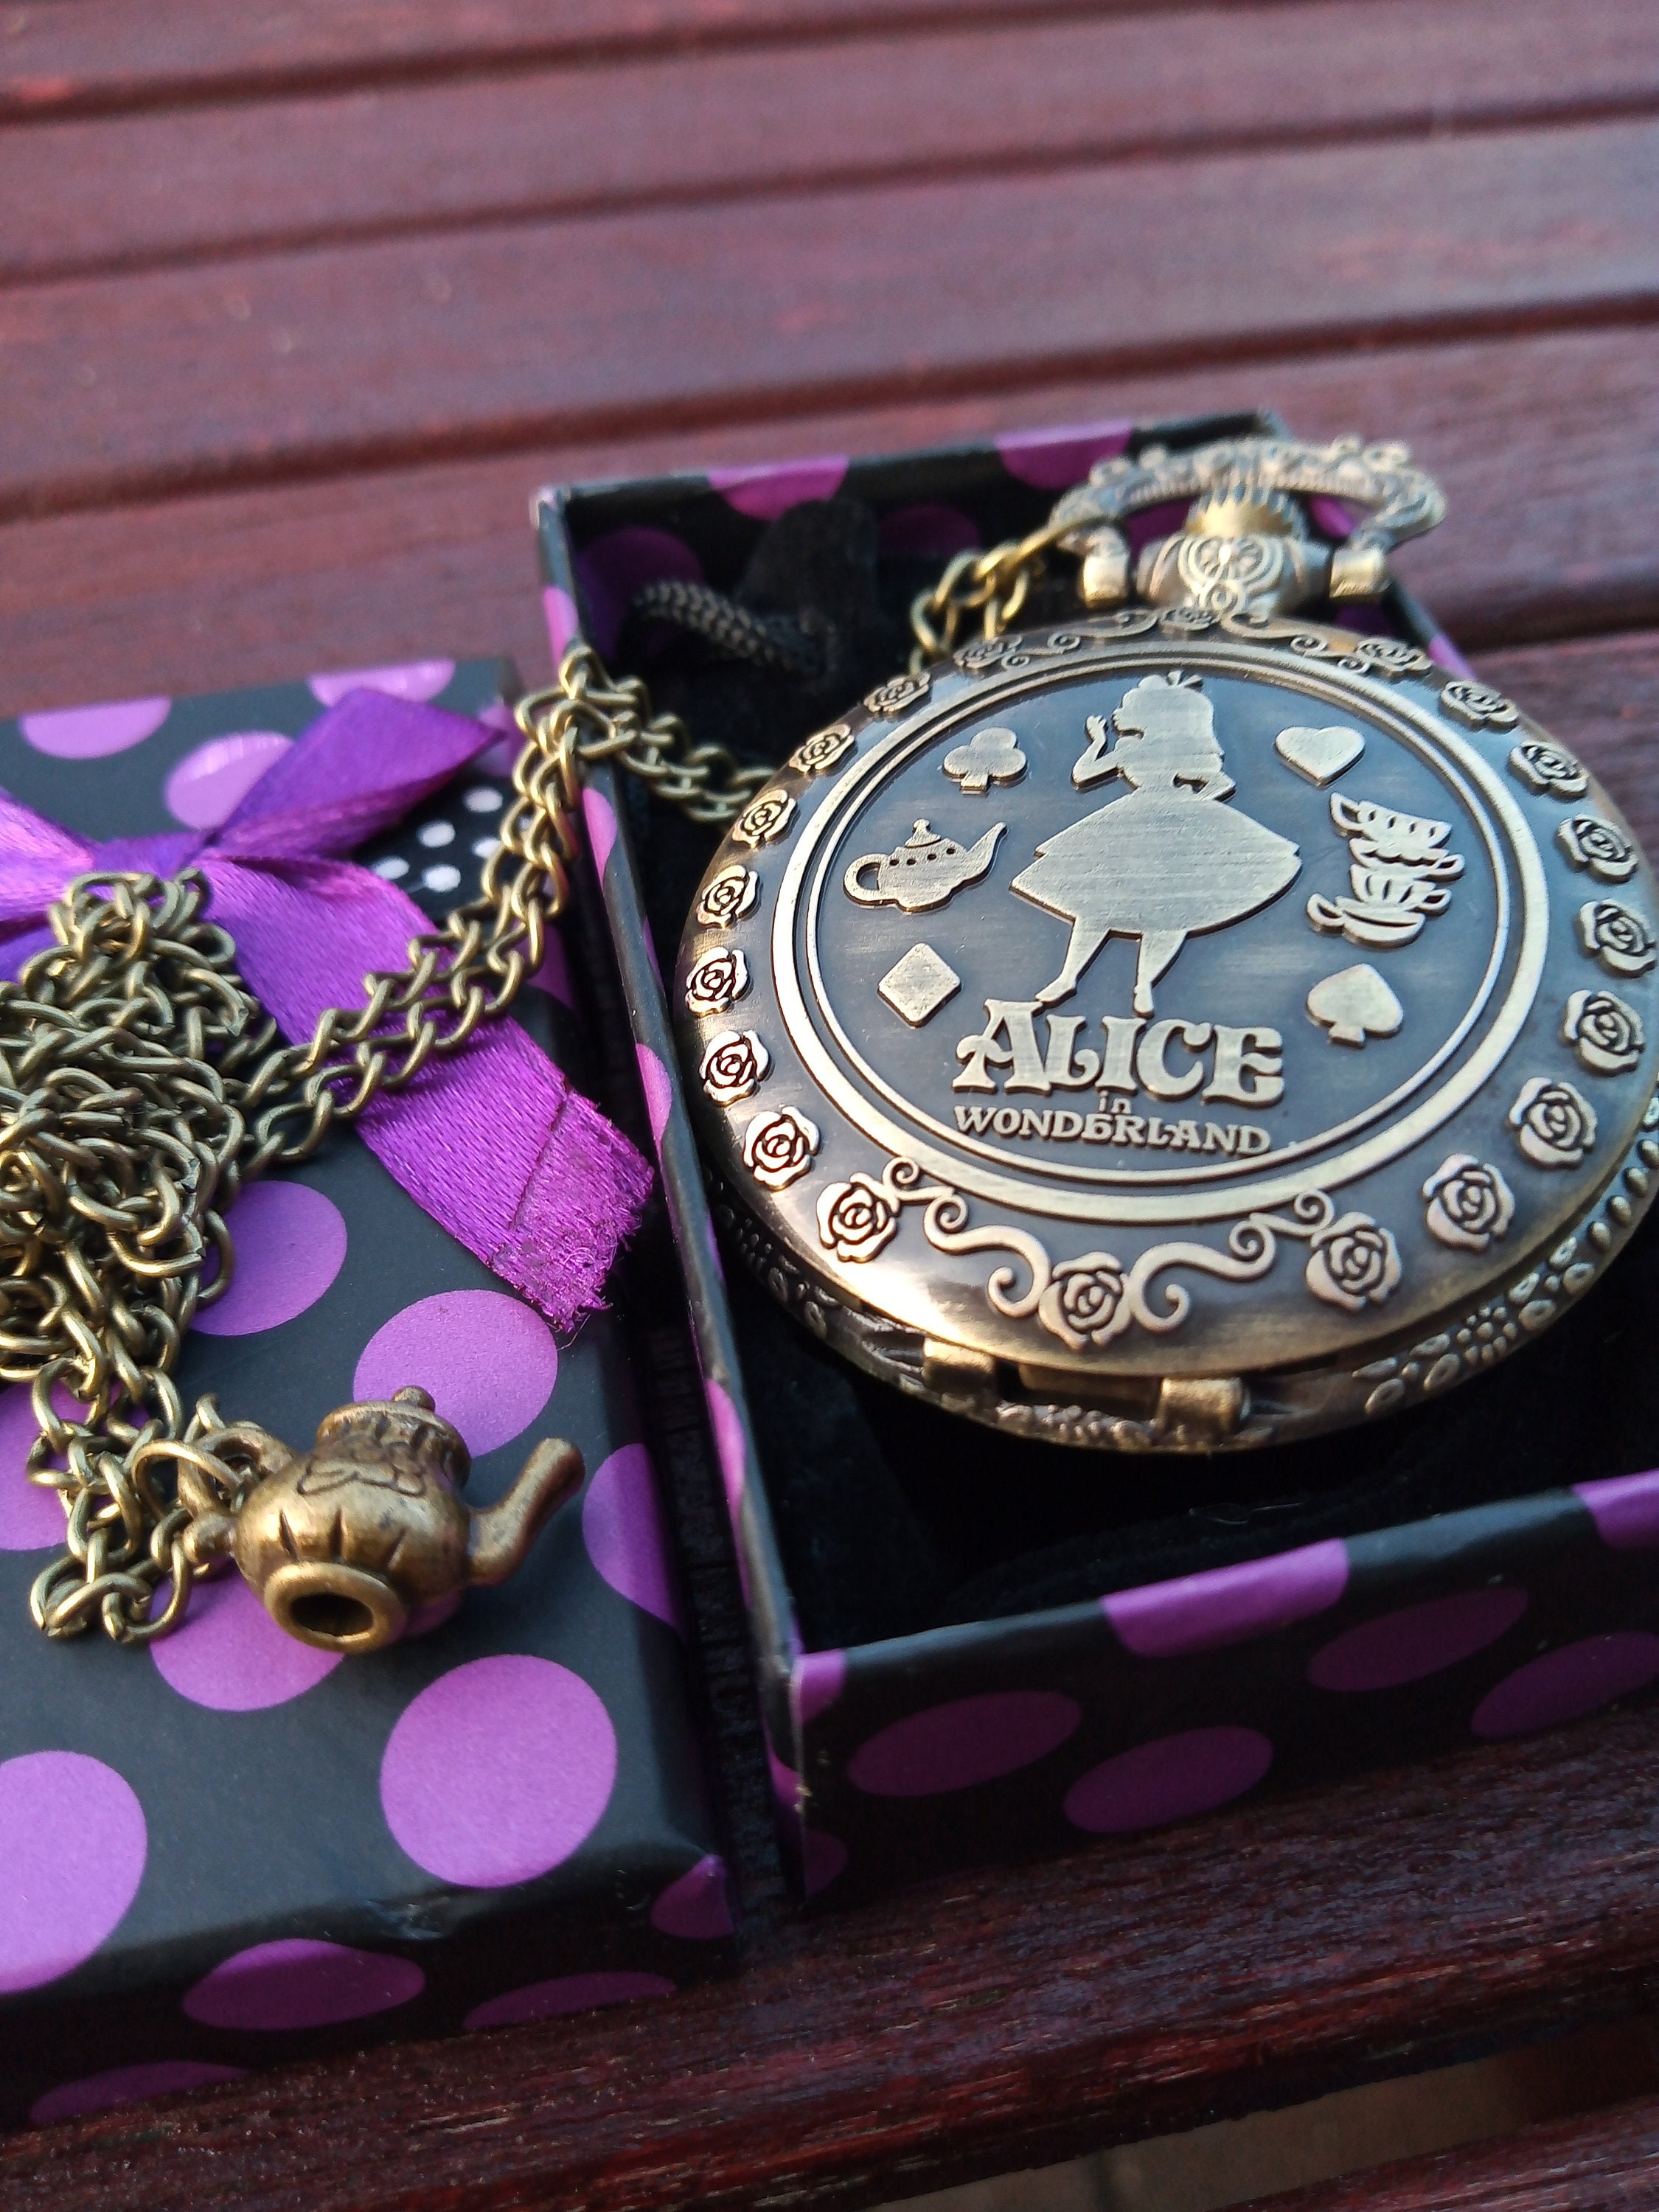 Creativearrowy Retro Alice in Wonderland Theme Steampunk Pocket Watch Bronze Quartz Pocket Watches Vintage Fob Watches Christmas Brithday Gift